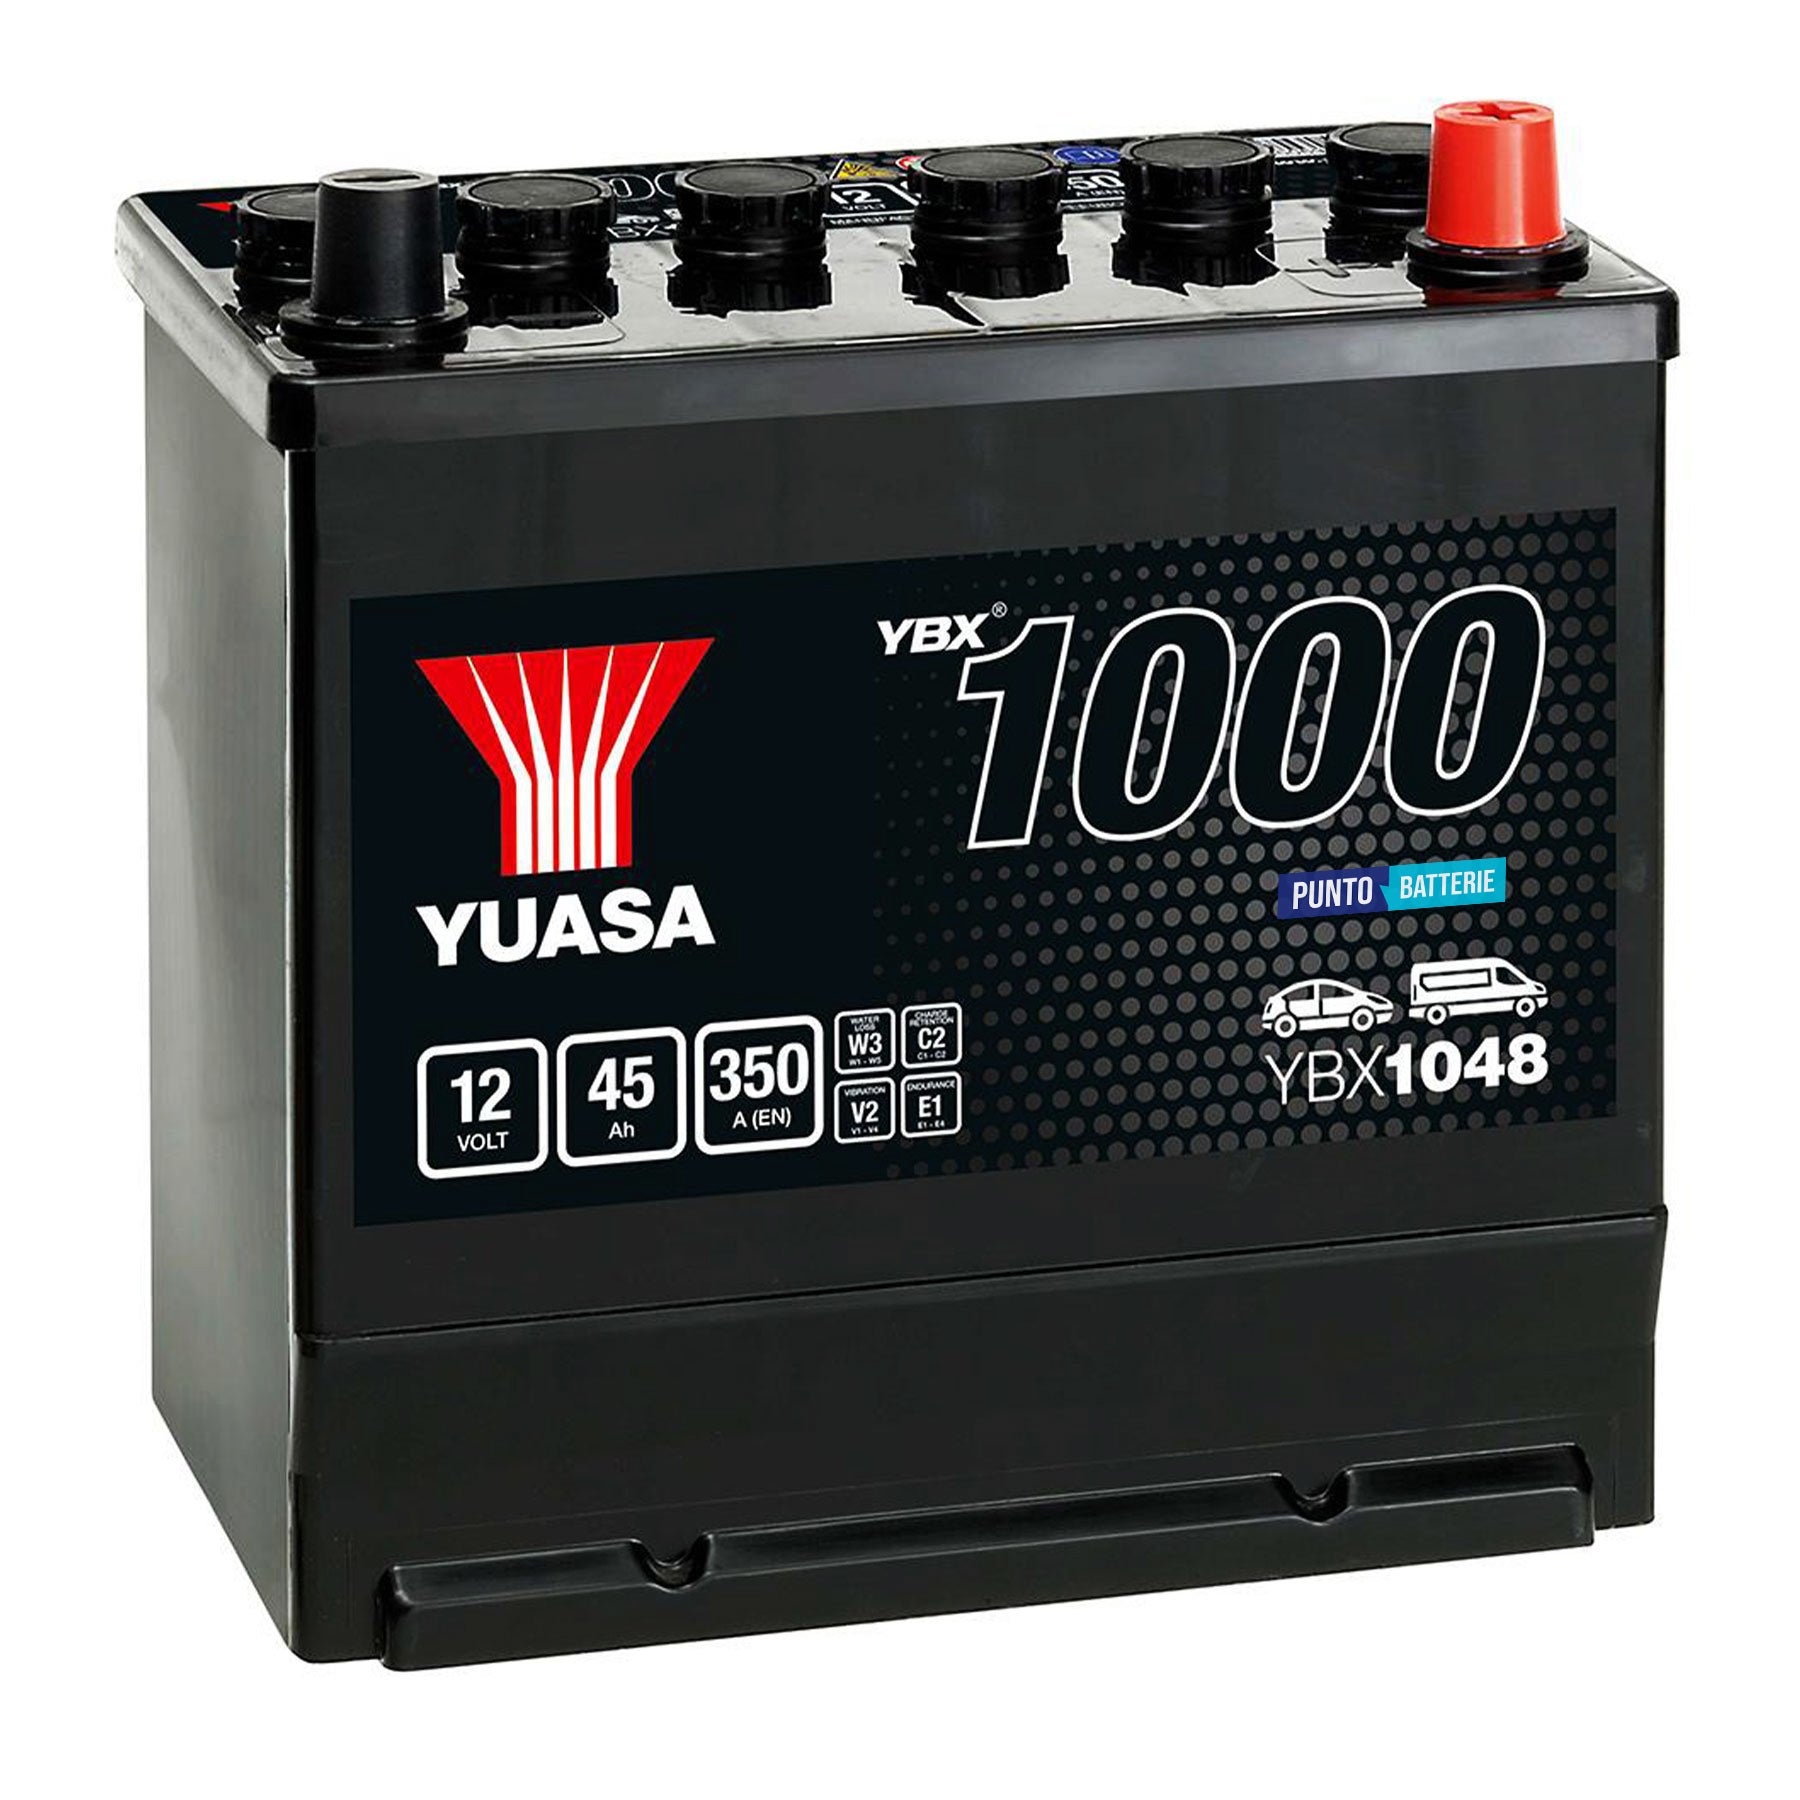 Batteria originale Yuasa YBX1000 YBX1048, dimensioni 220 x 135 x 225, polo positivo a destra, 12 volt, 45 amperora, 350 ampere. Batteria per auto e veicoli leggeri.